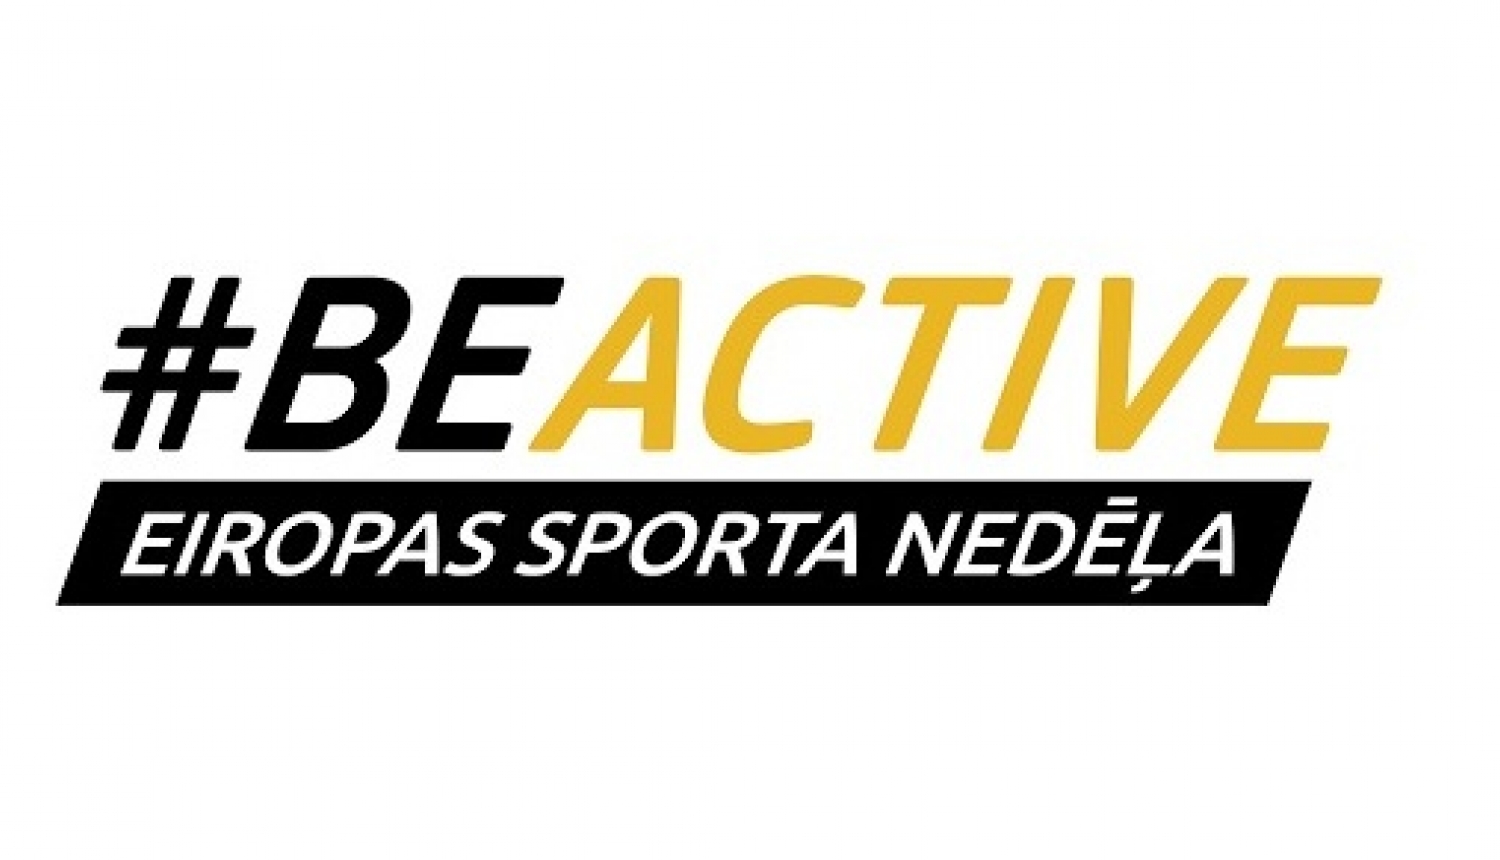 Eiropas sporta nedēļa 2020 #BeActive